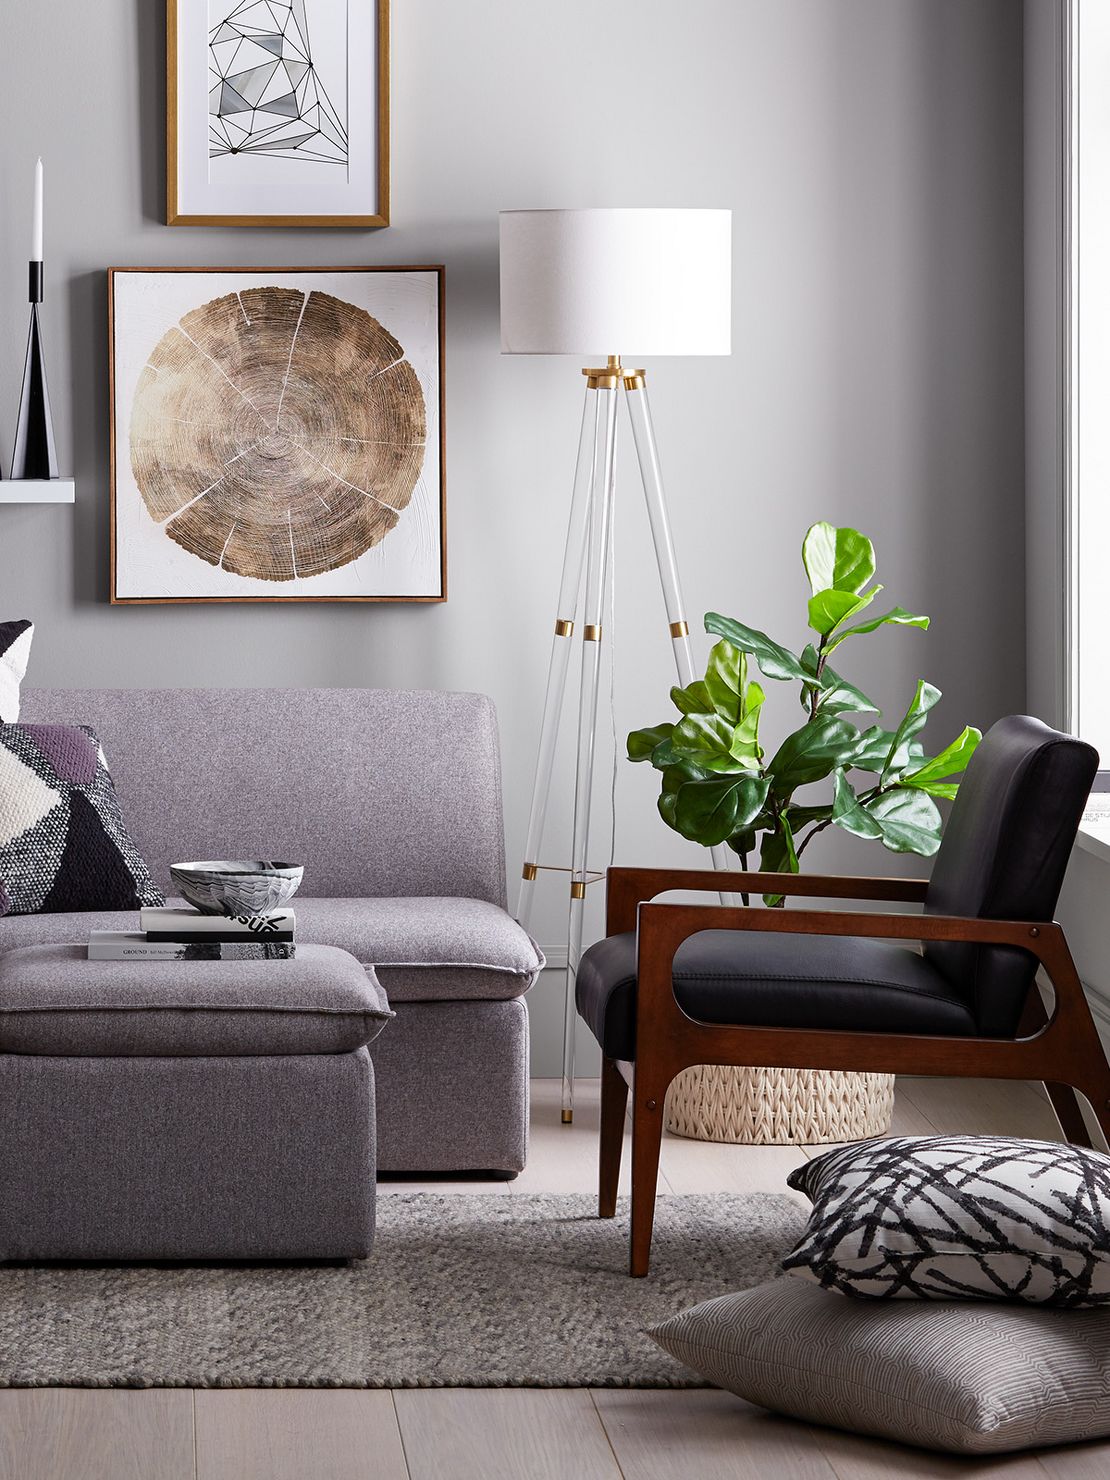  Target Living Room Furniture Info